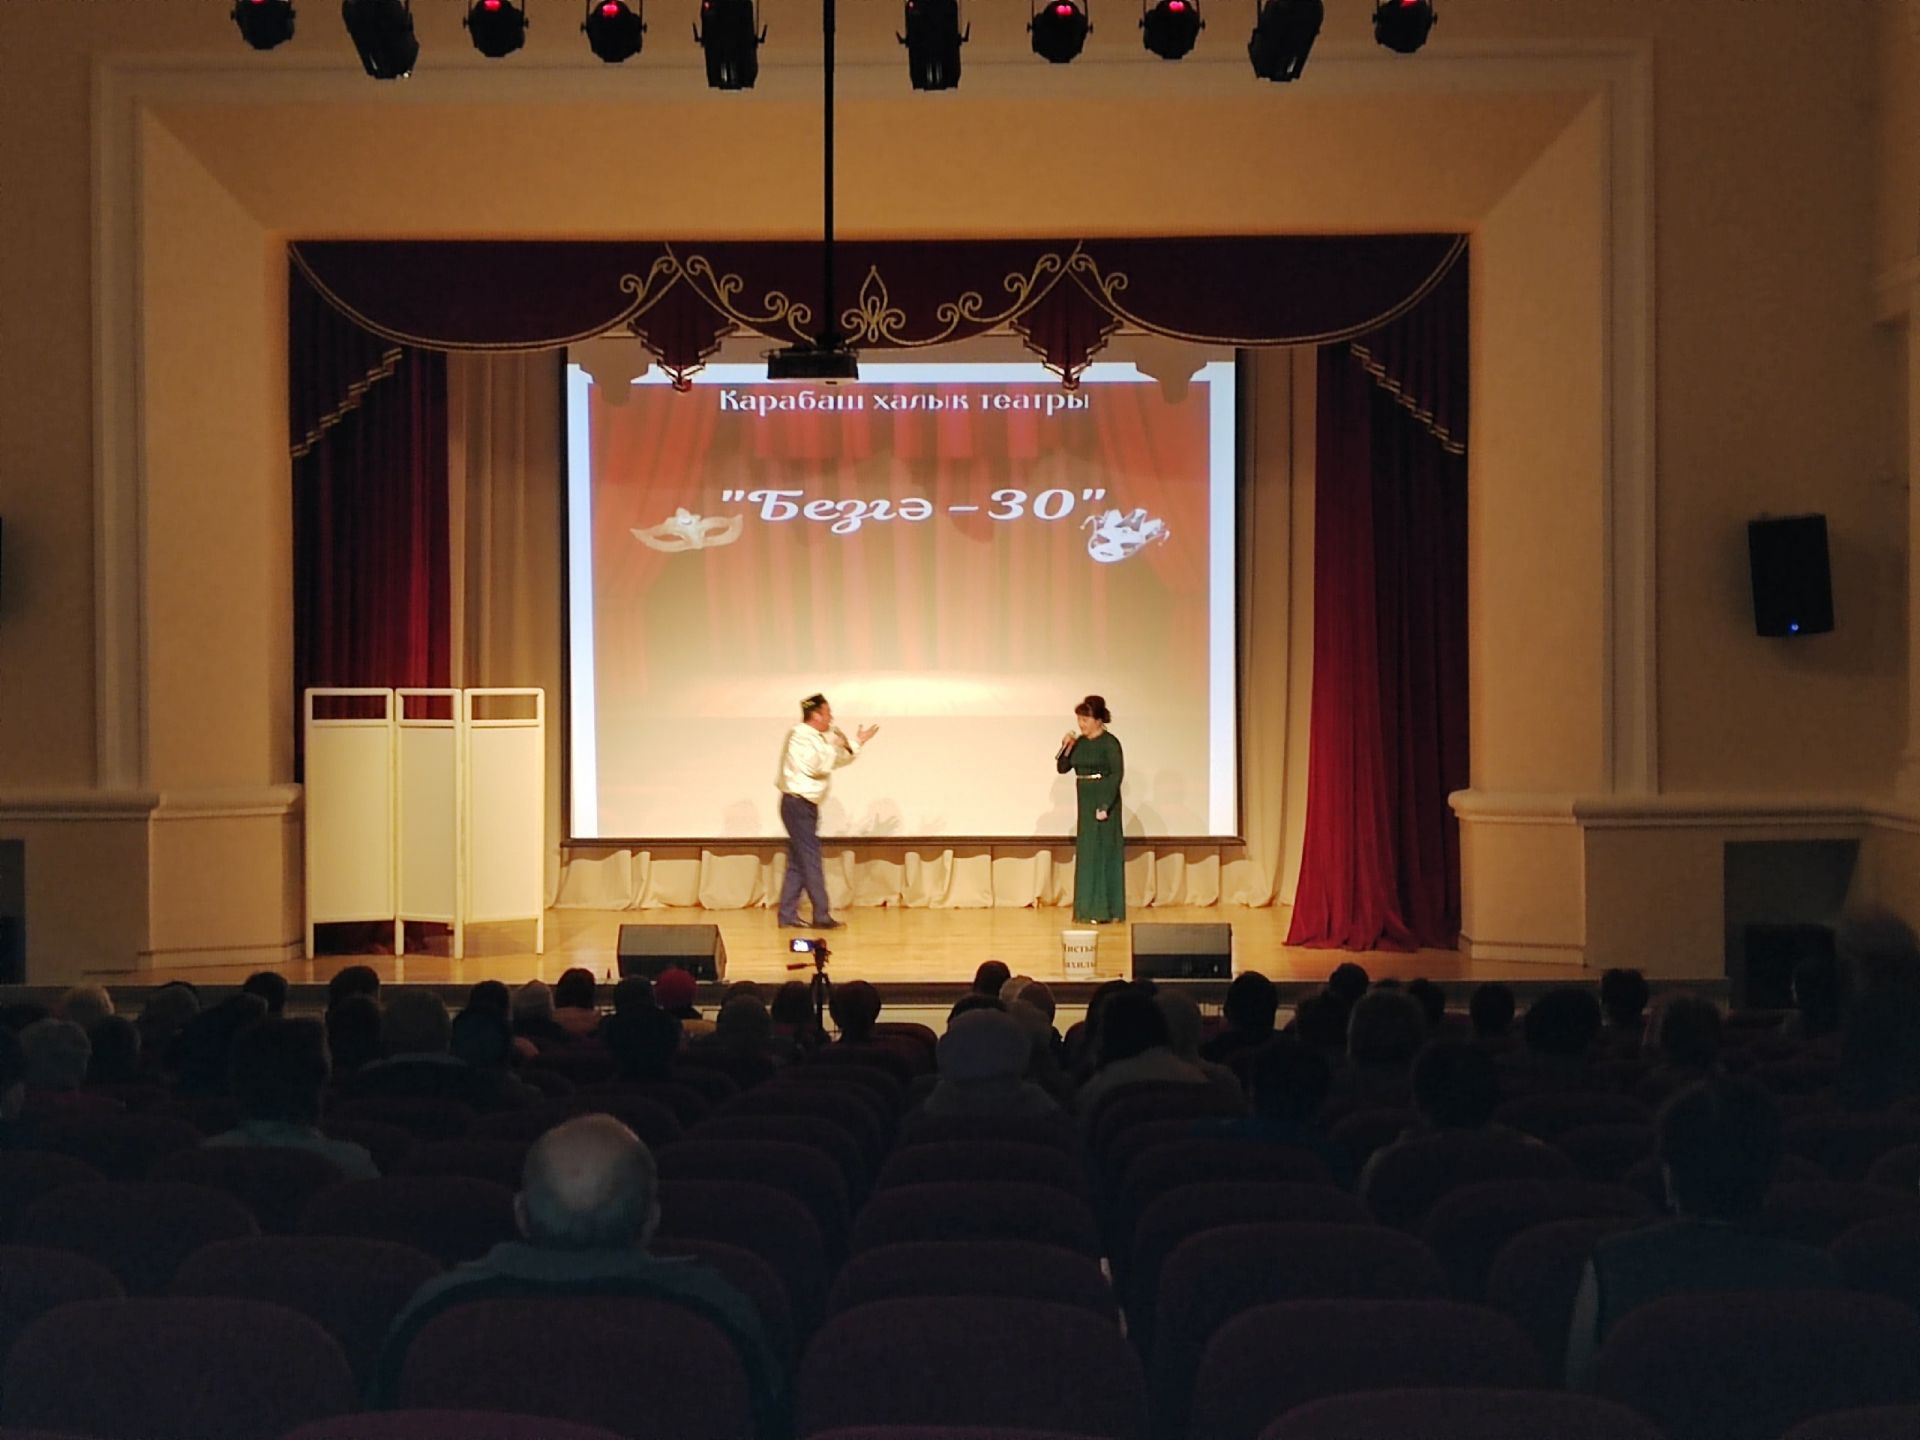 Творческий вечер самодеятельного народного театра «Безгә - 30!» прошел в Карабашском ДК